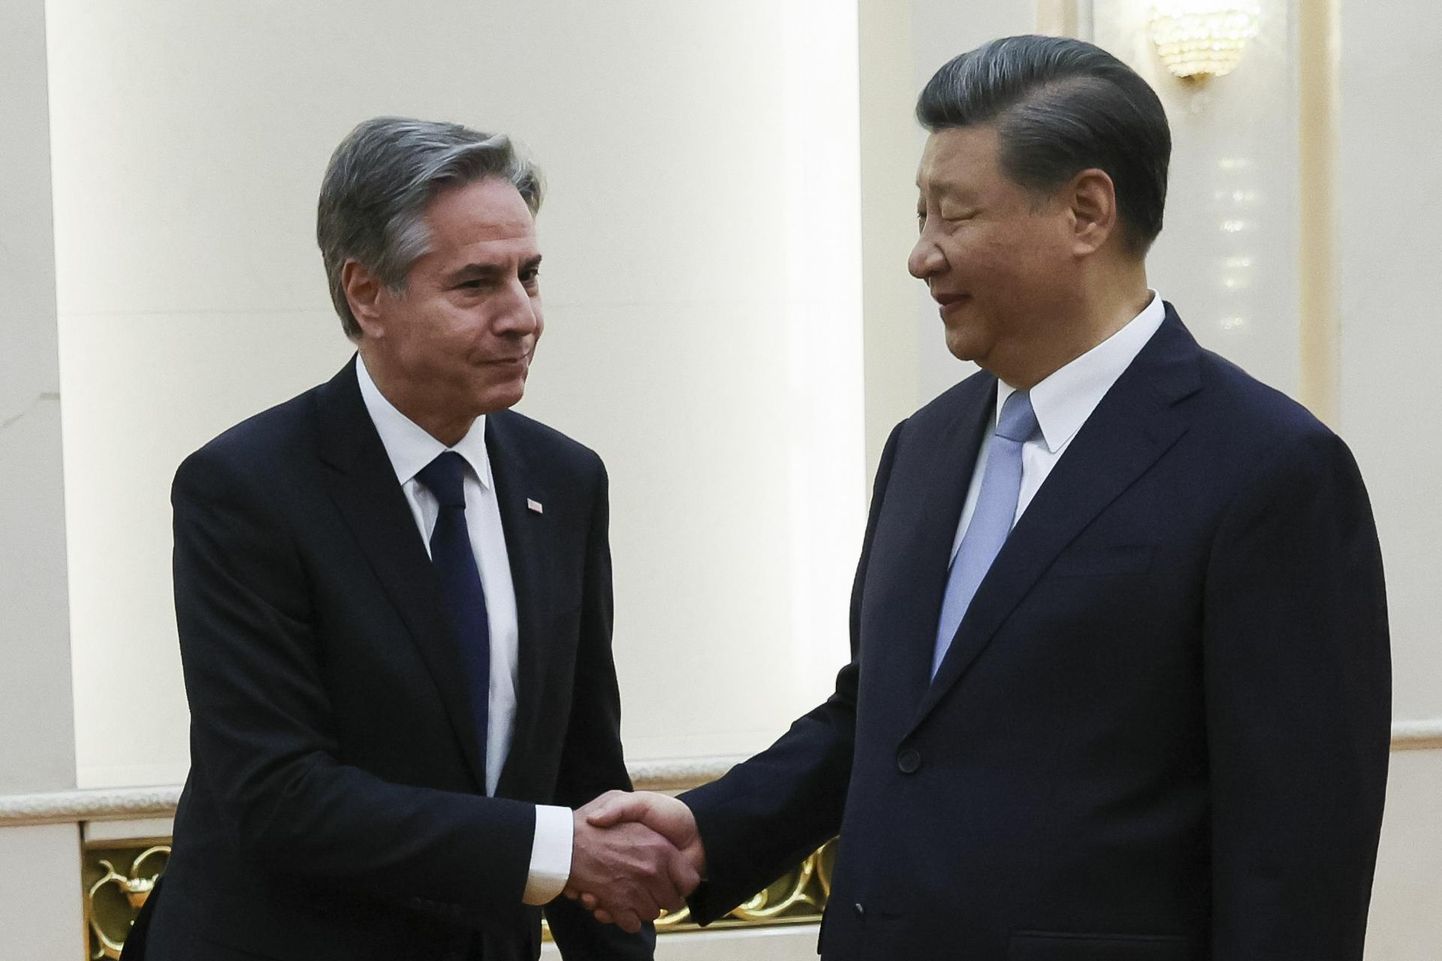 Ameerika Ühendriikide välisminister Antony Blinken kätlemas Hiina presidendi Xi Jinpingiga. 